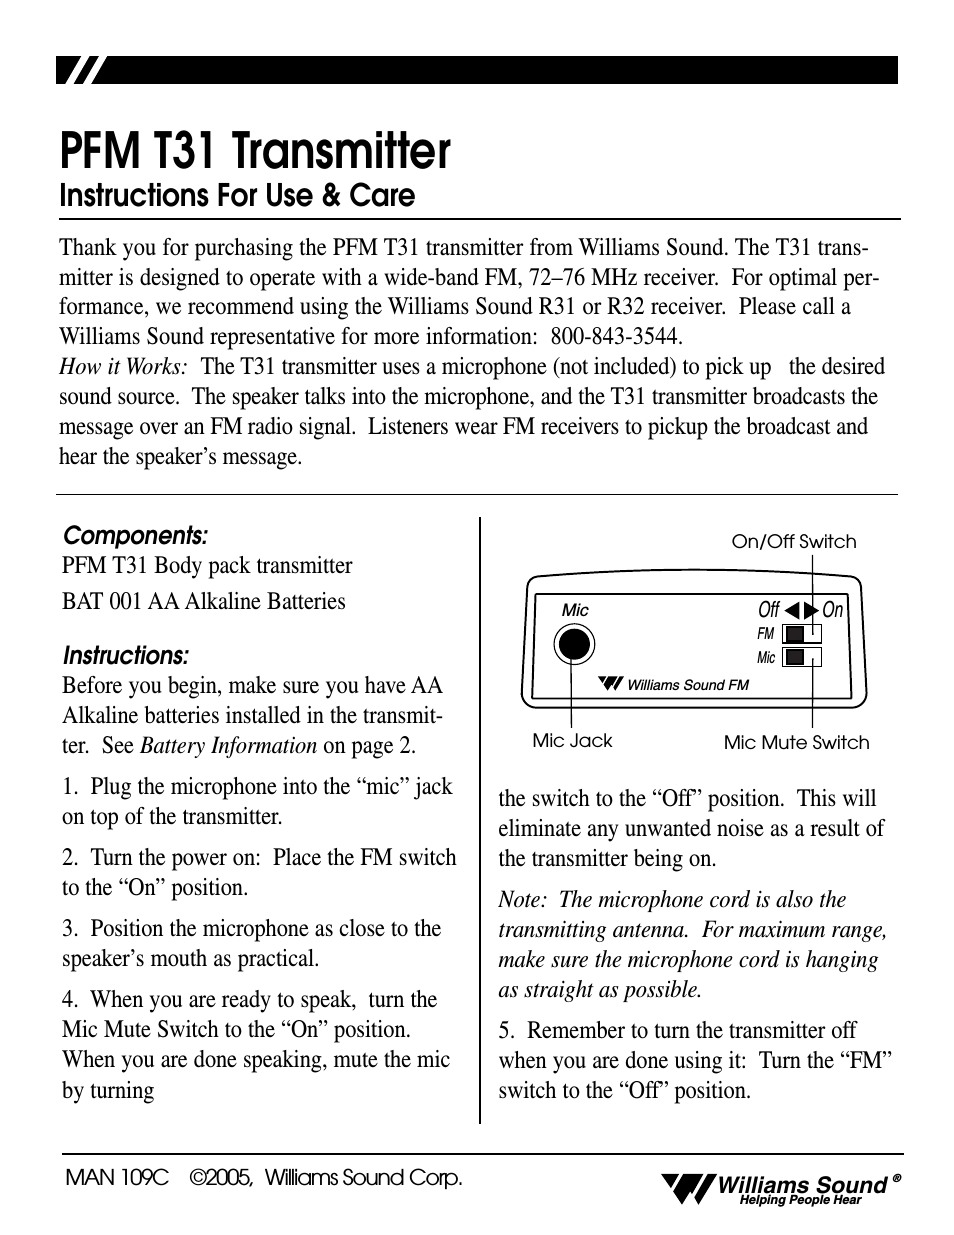 Transmitter PFM T31